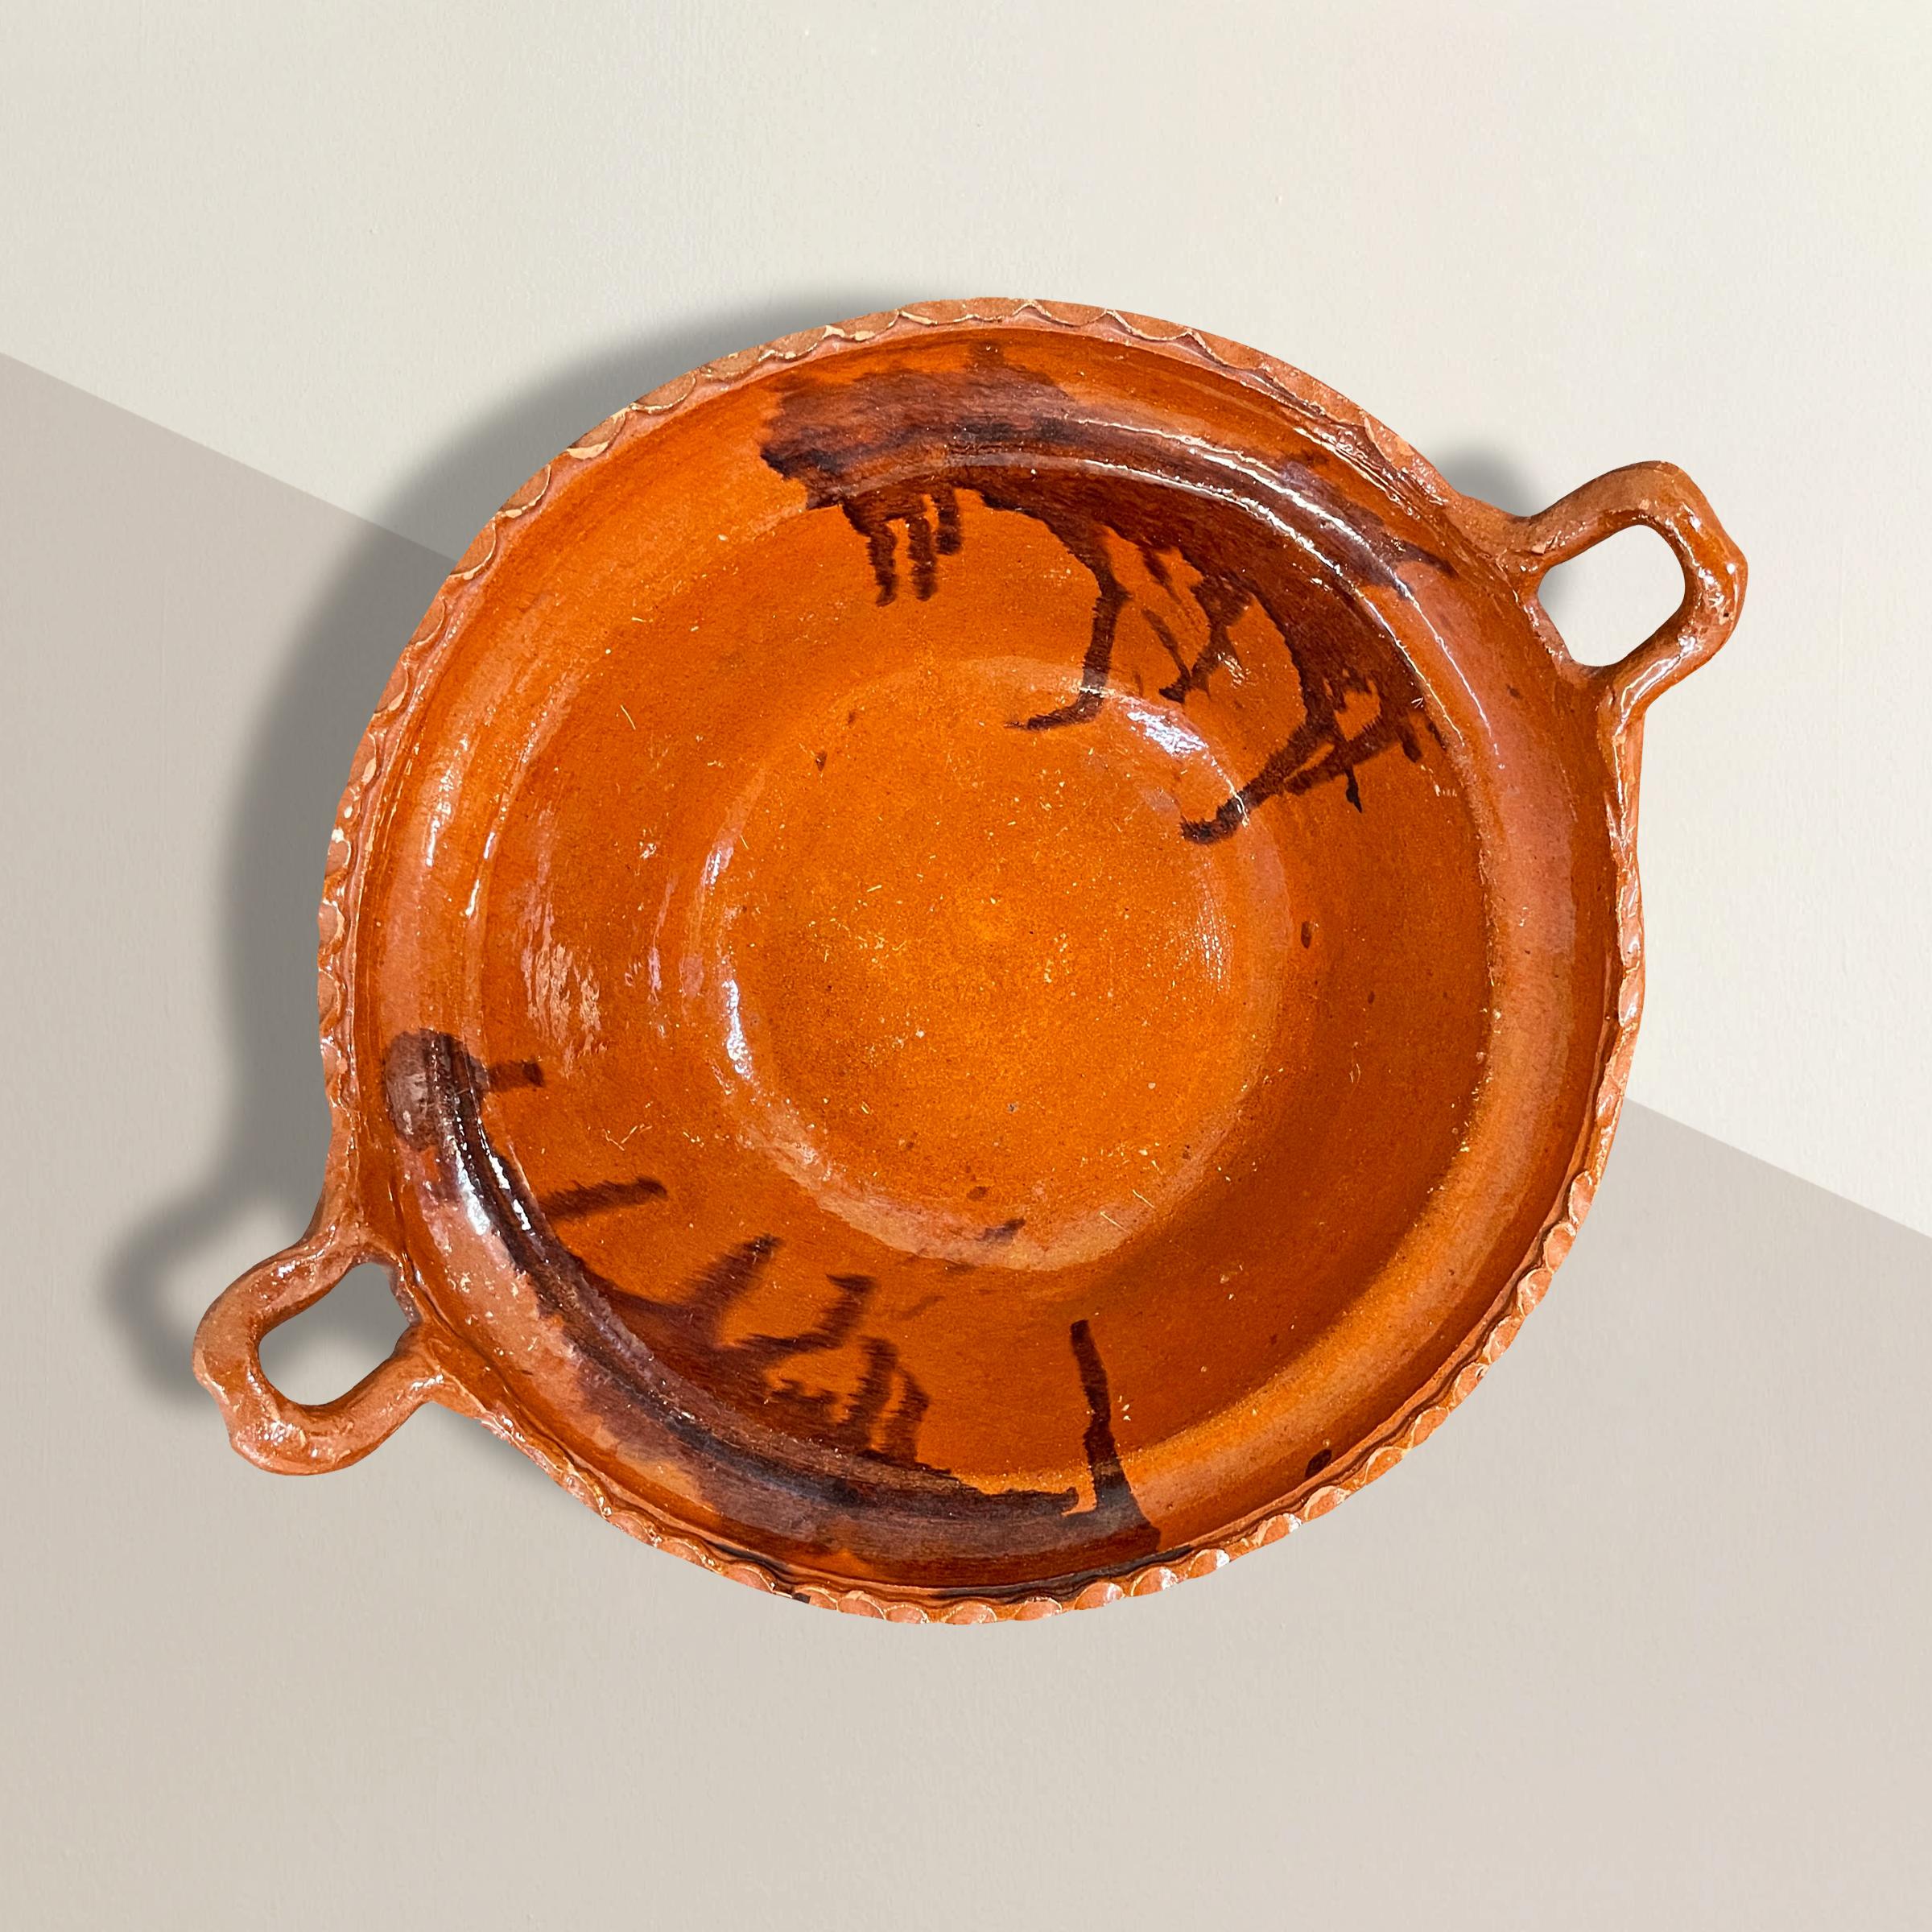 Magnifique bol vintage en terre cuite mexicaine avec deux anses, un rebord volant, deux grandes taches de glaçure à l'intérieur. L'extérieur n'est pas émaillé. Parfait pour maintenir les fruits et légumes sur votre îlot de cuisine, ou demandez-nous